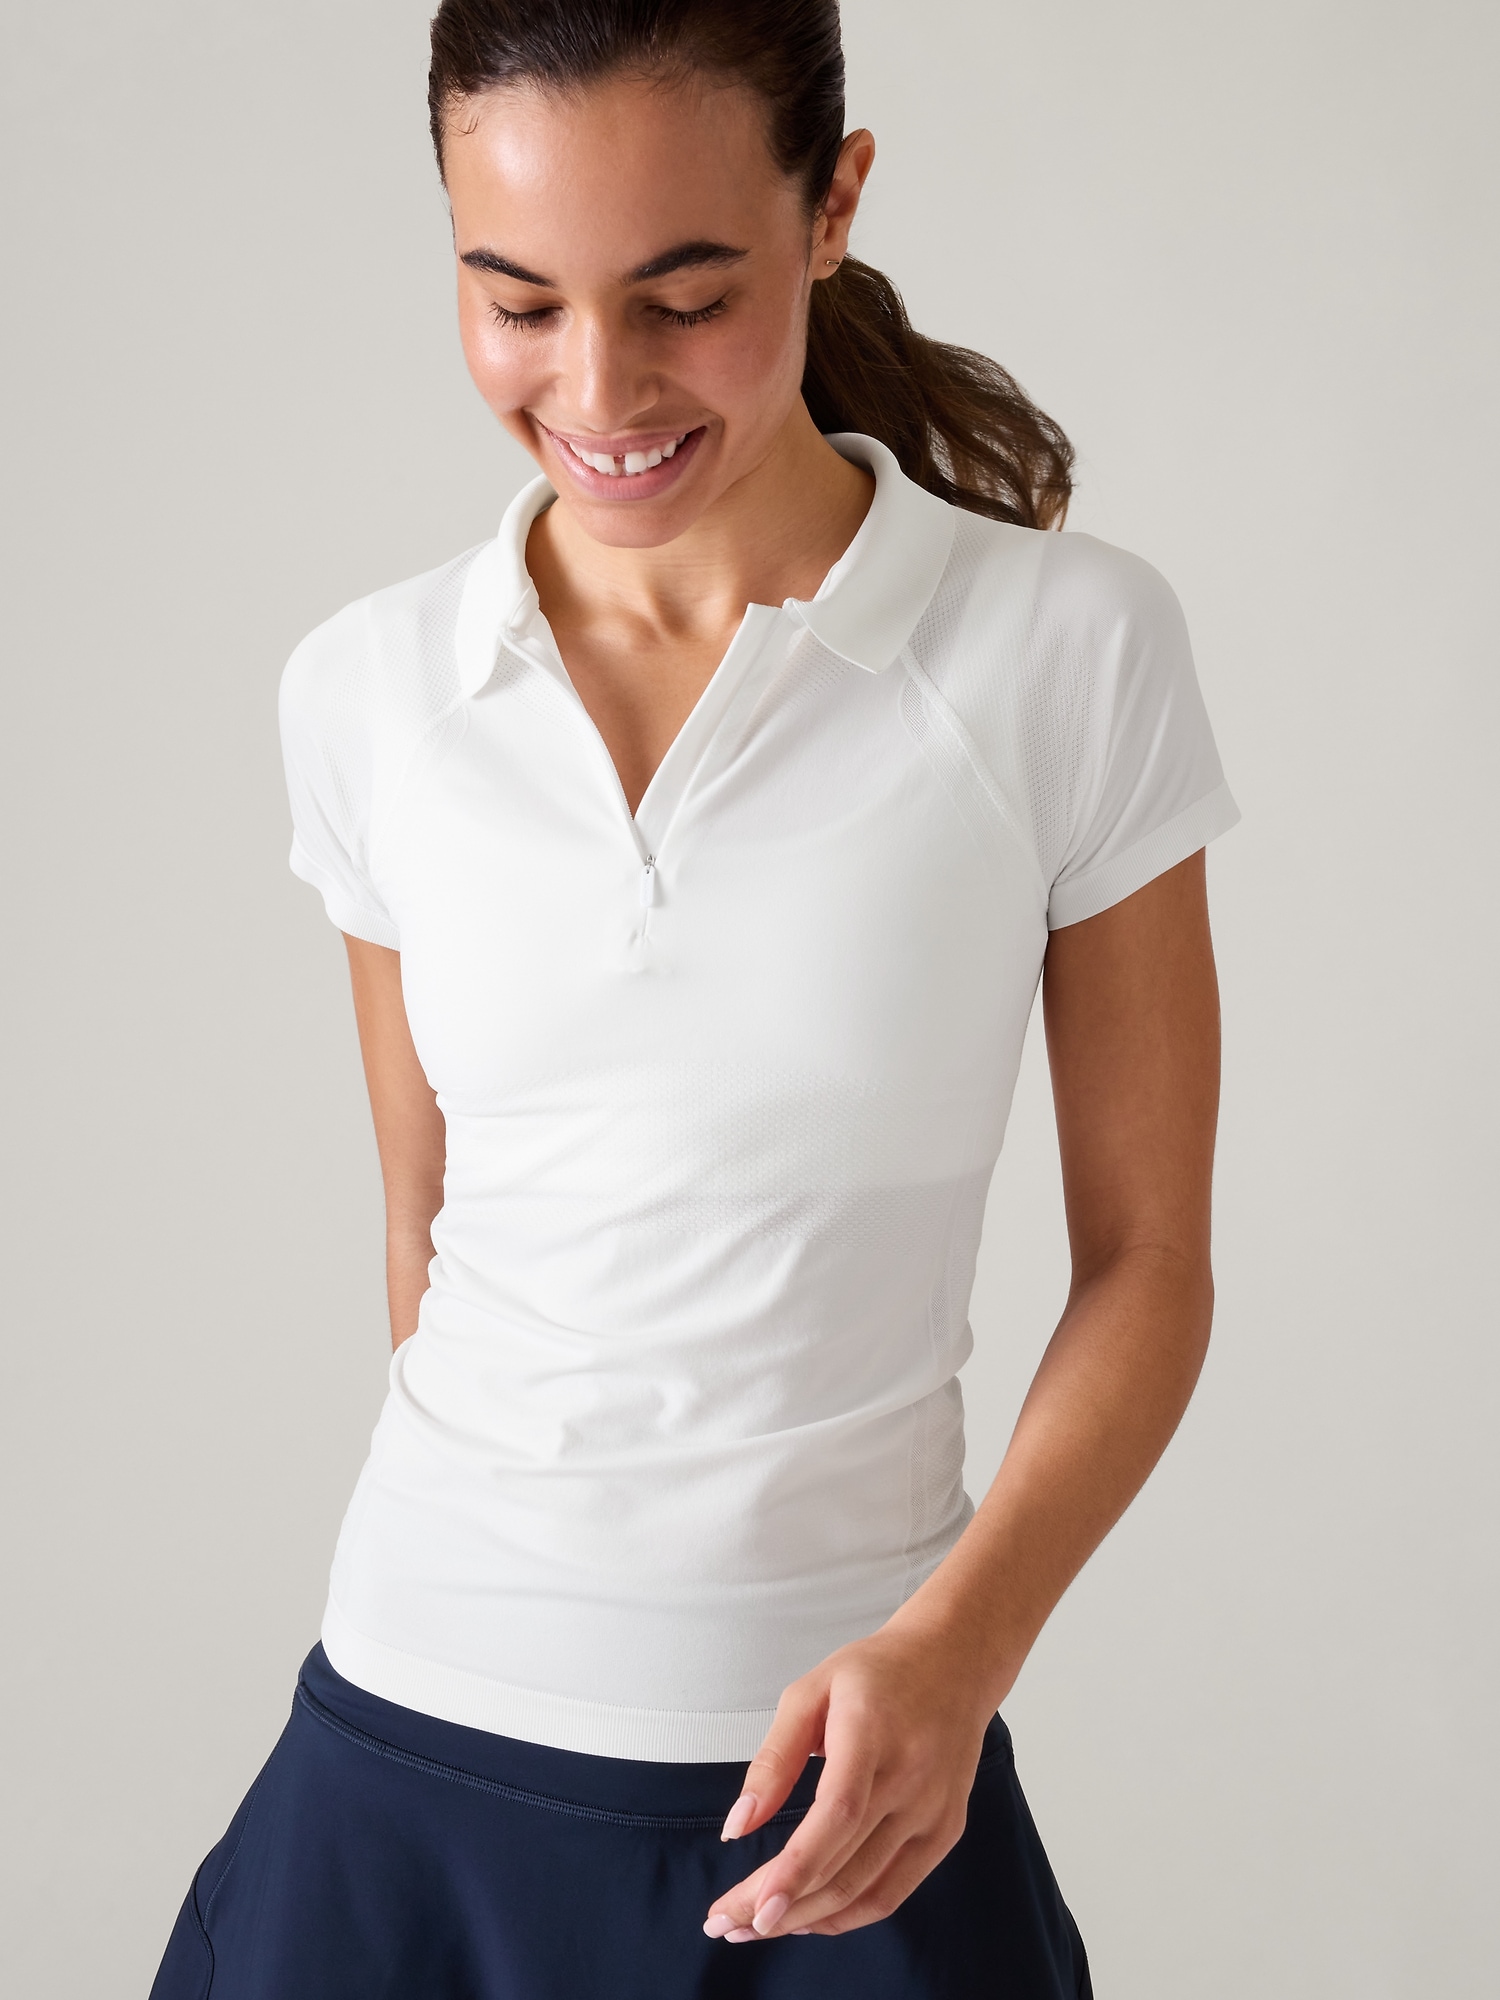 Athleta Luxe Seamless Polo Tee T-Shirt XL Magnolia White Cream